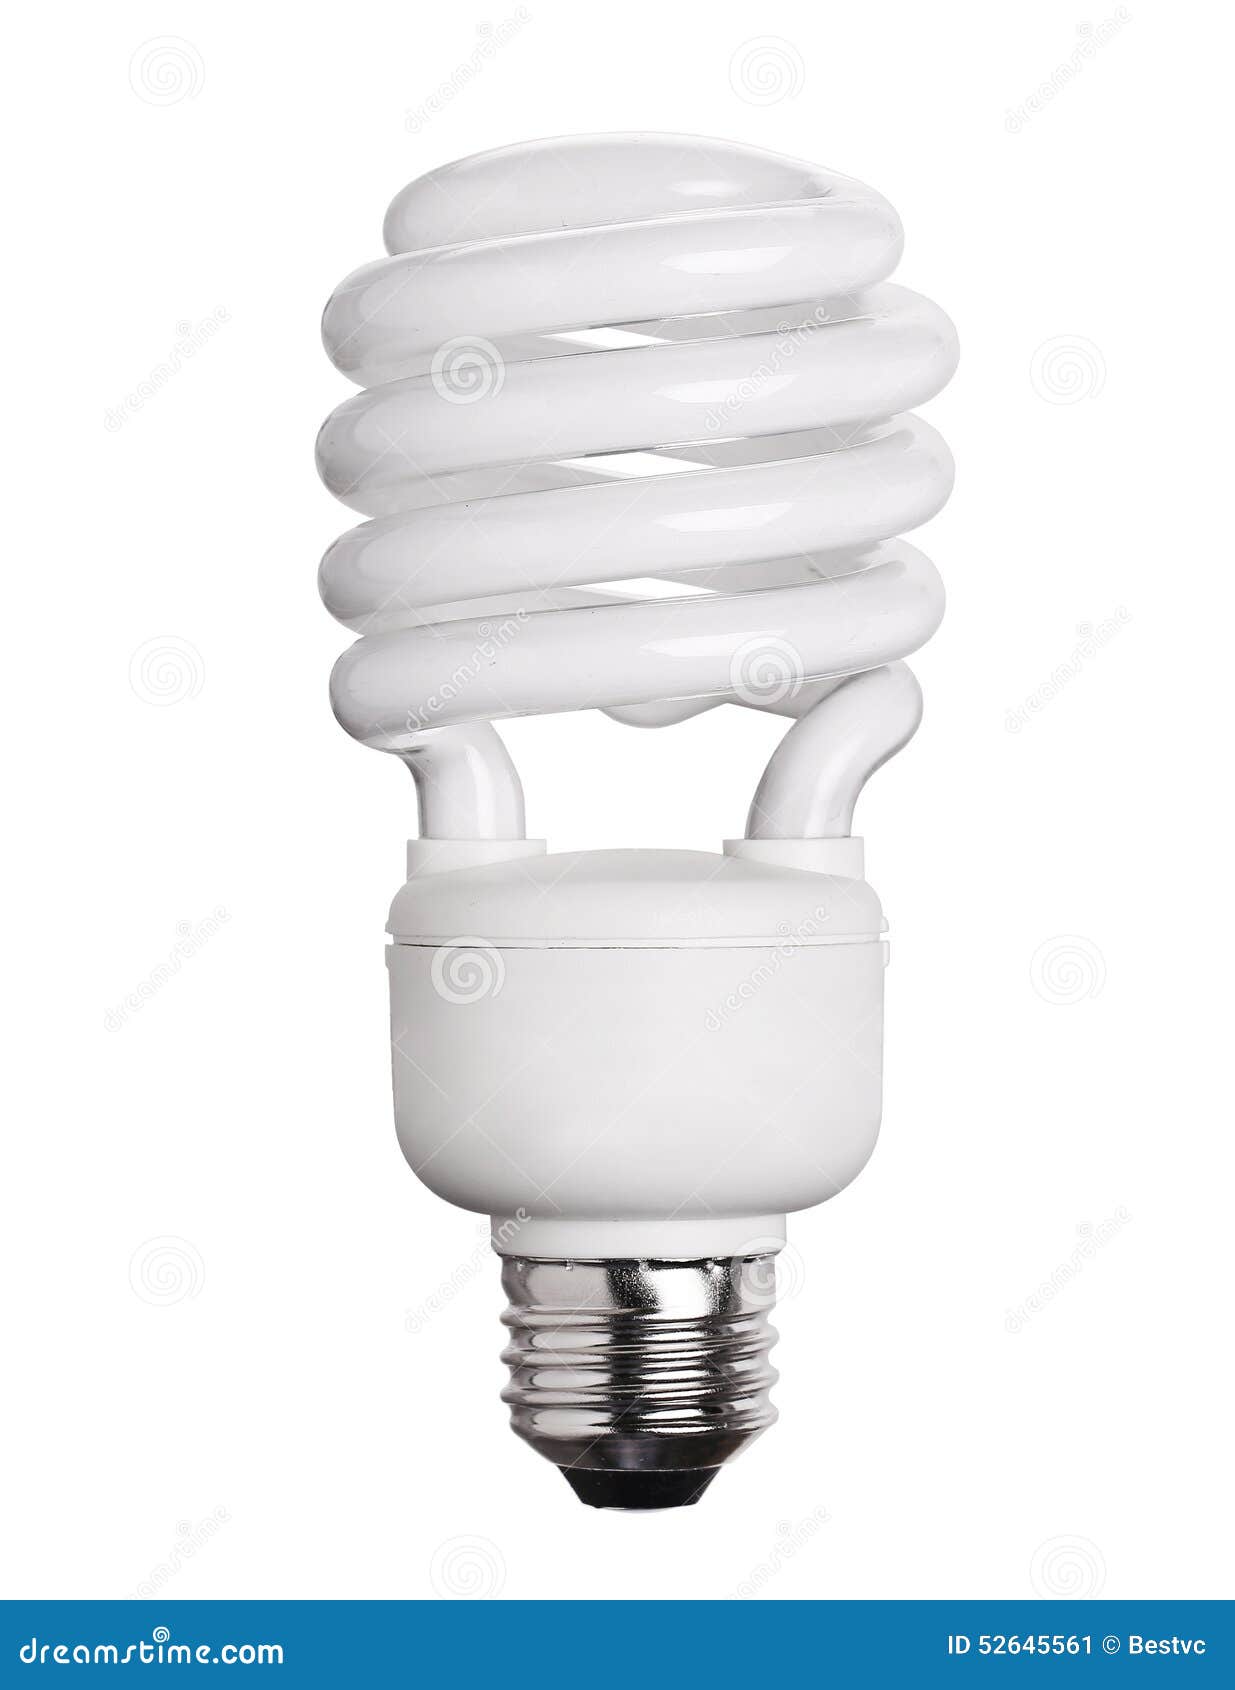 cfl fluorescent light bulb  on white